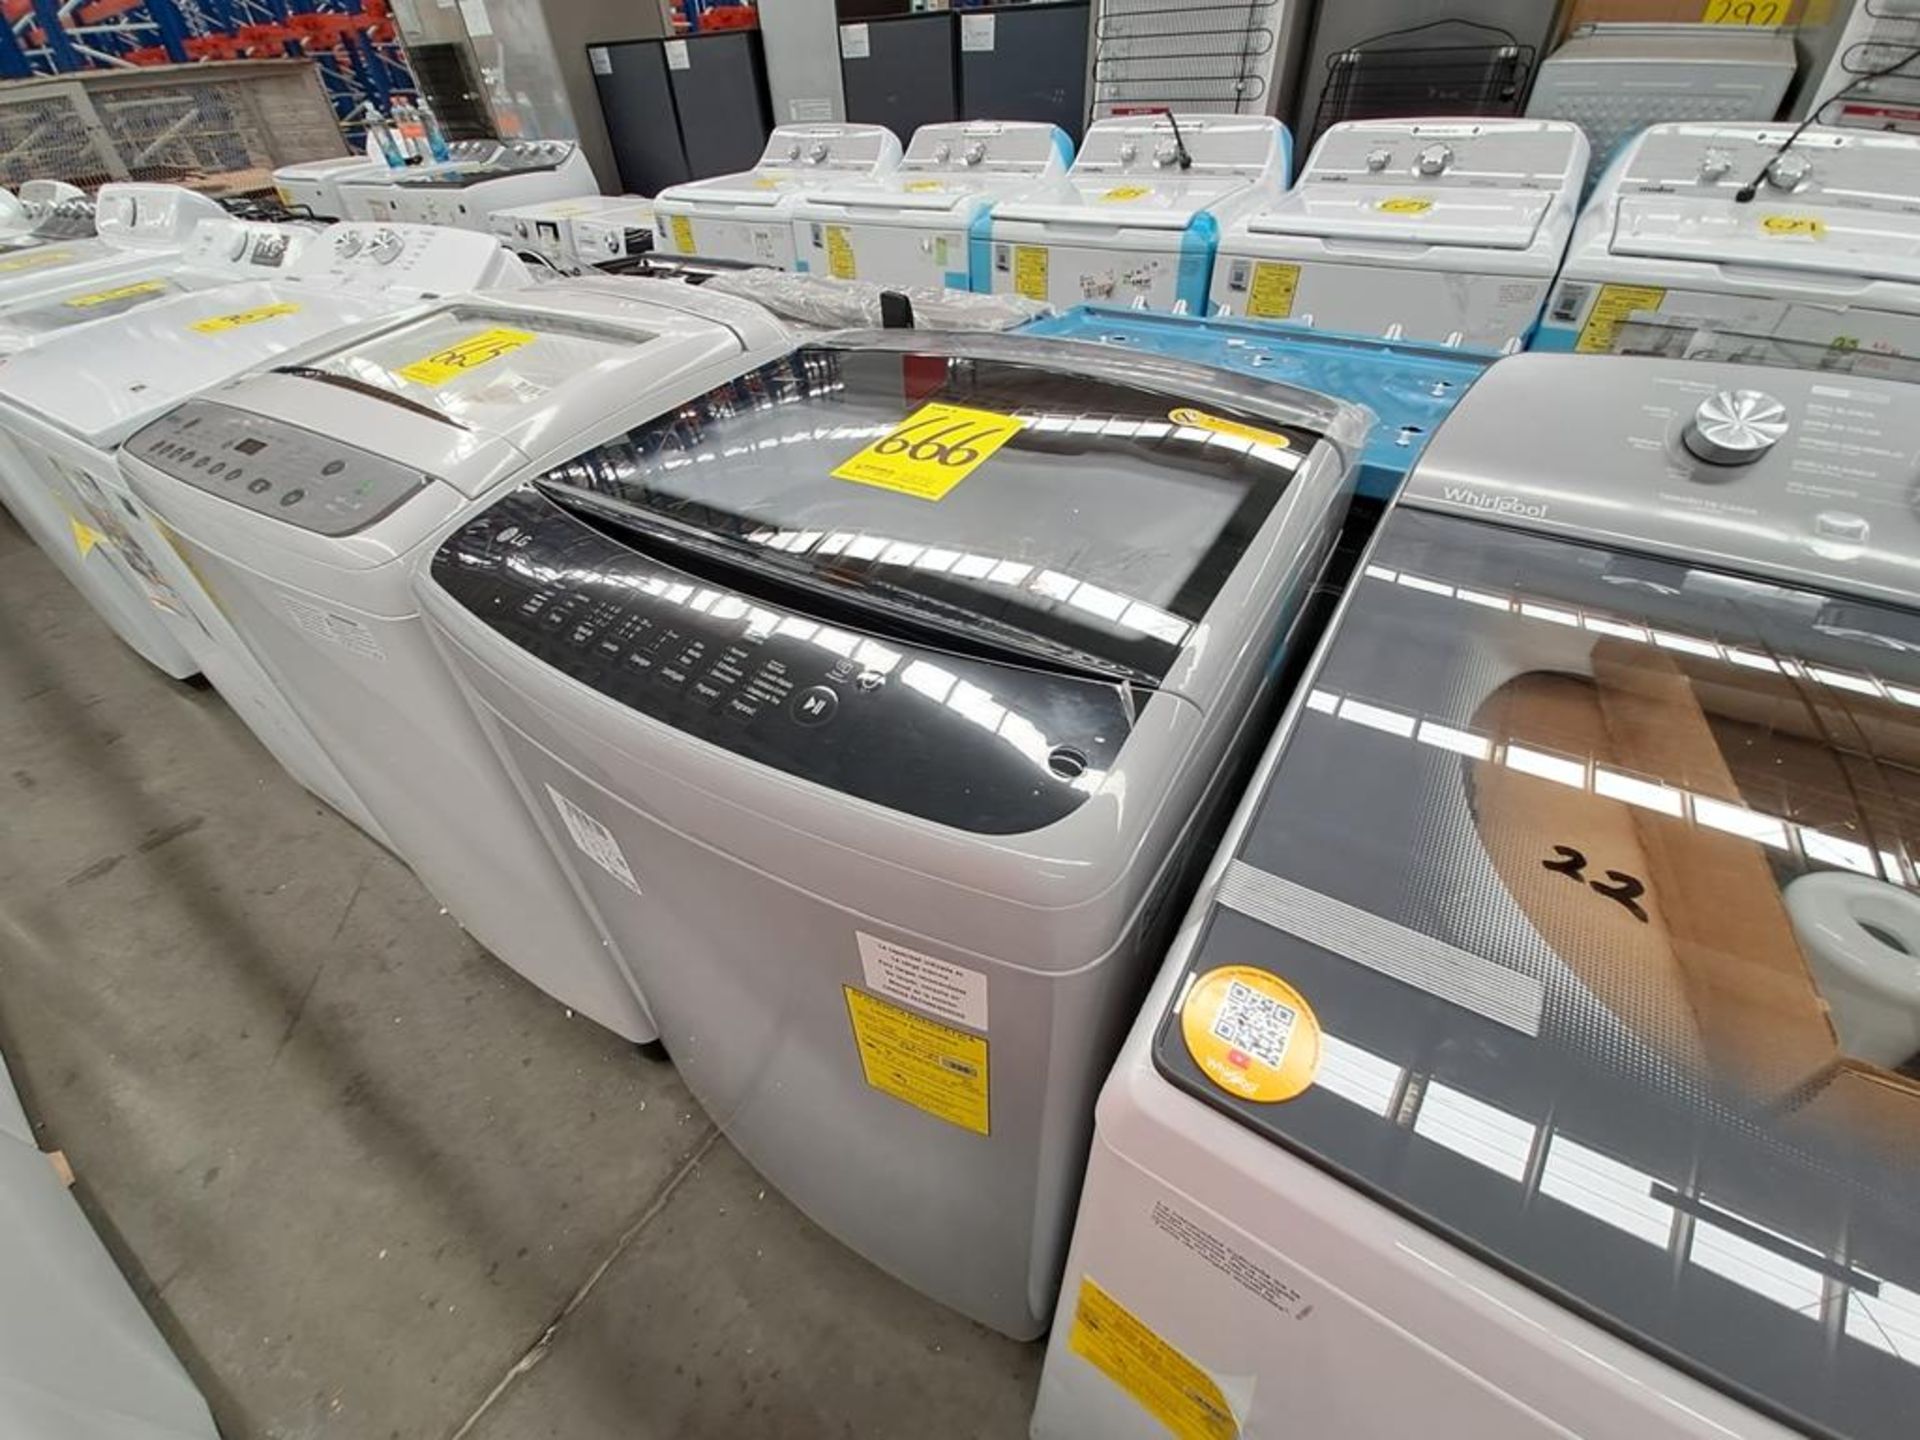 Lote de 2 lavadoras contiene: 1 Lavadora de 18 KG Marca LG, Modelo WT18DS8P, Serie ND, Color GRIS; - Image 2 of 8